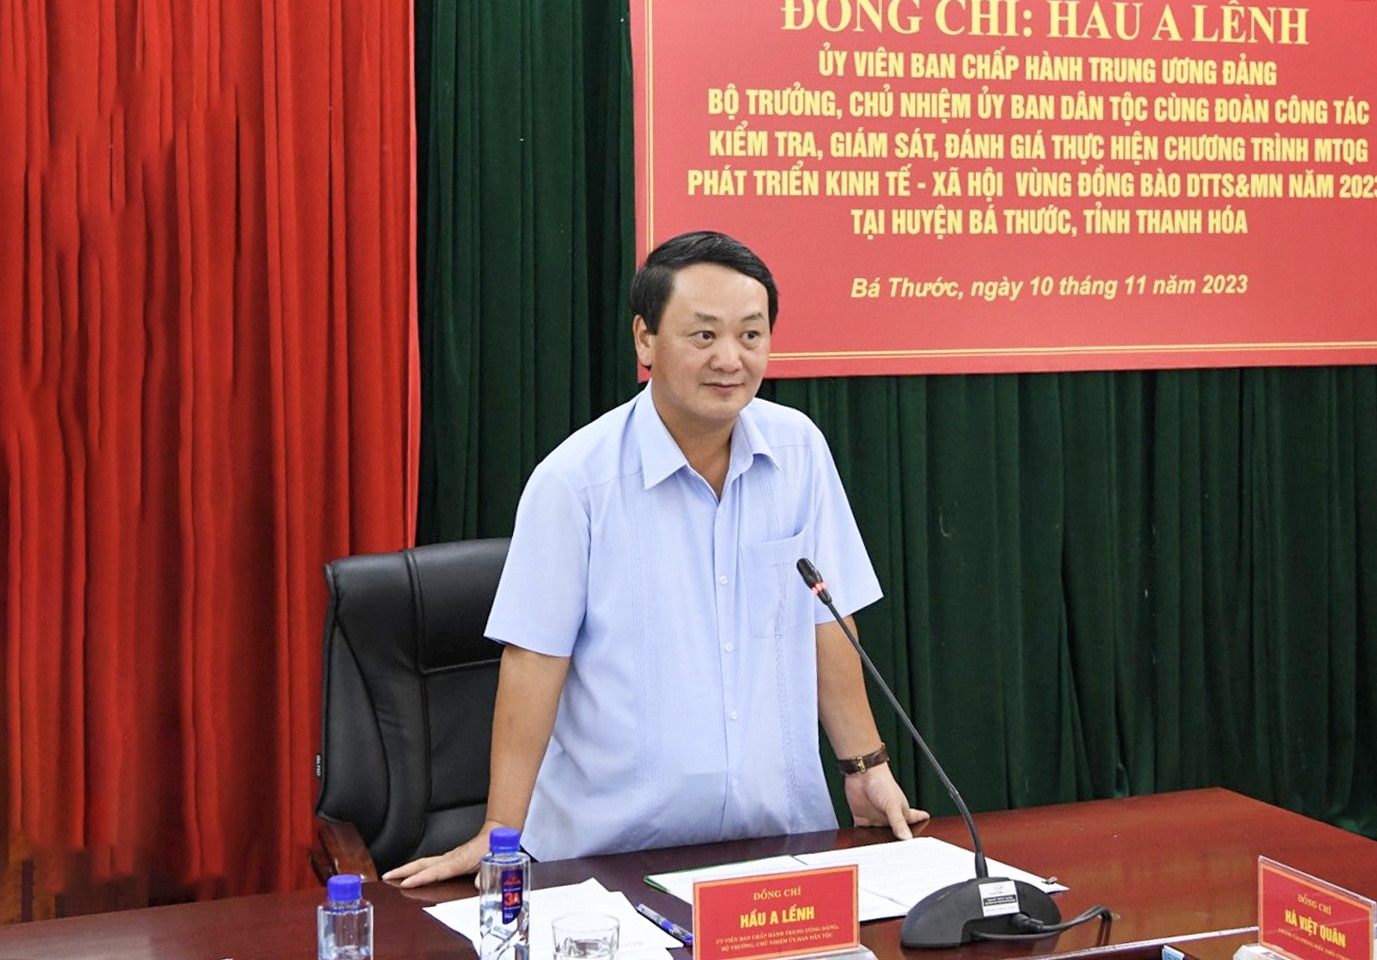 Bộ trưởng, Chủ nhiệm UBDT Hầu A Lềnh đánh giá cao những nỗ lực của tỉnh Thanh Hoá trong thực hiện Chương trình MTQG 1719